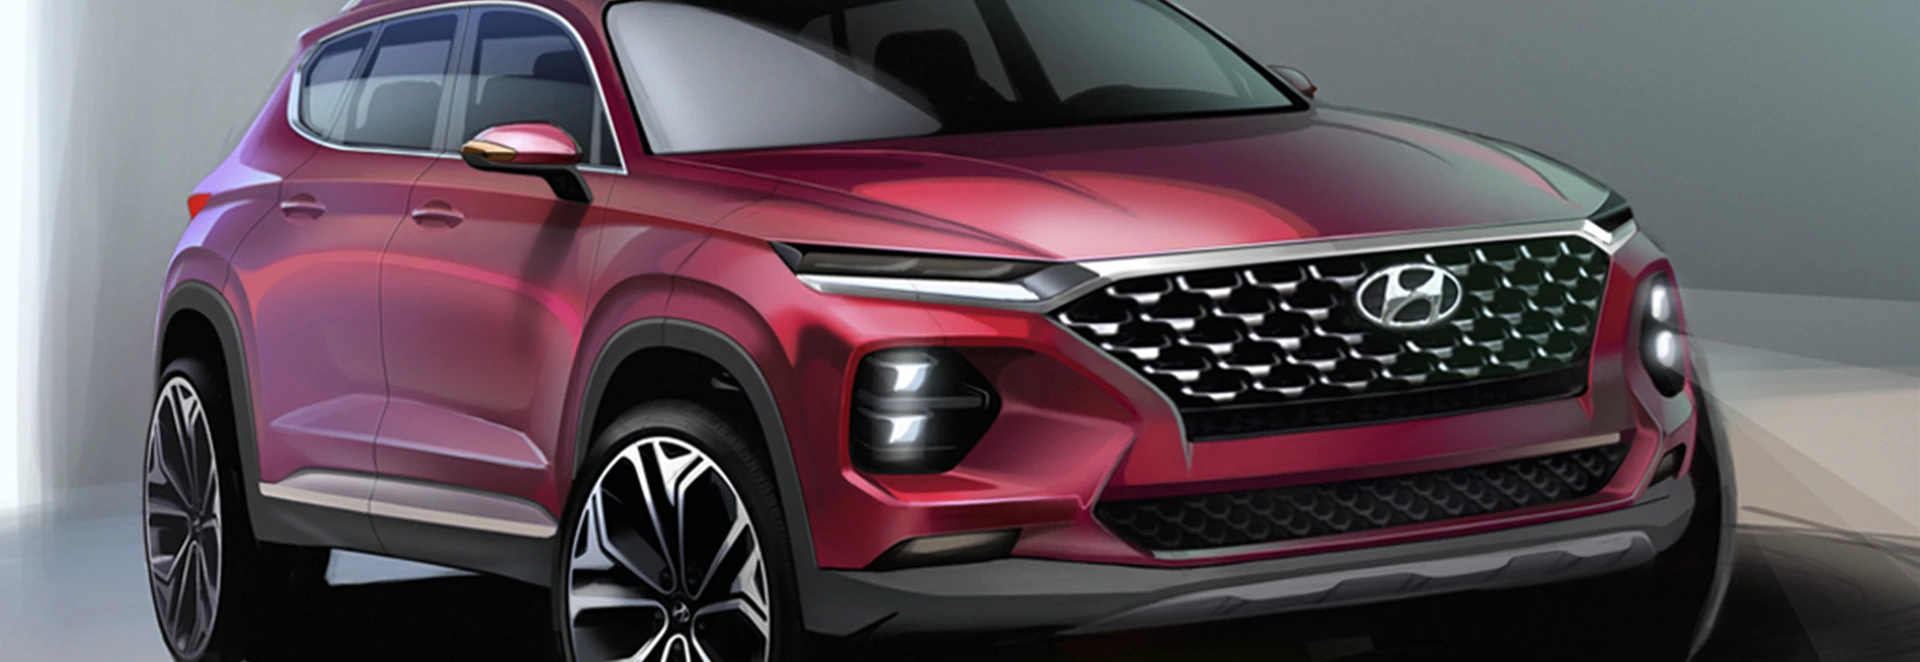 New 2019 Hyundai Santa Fe SUV revealed 